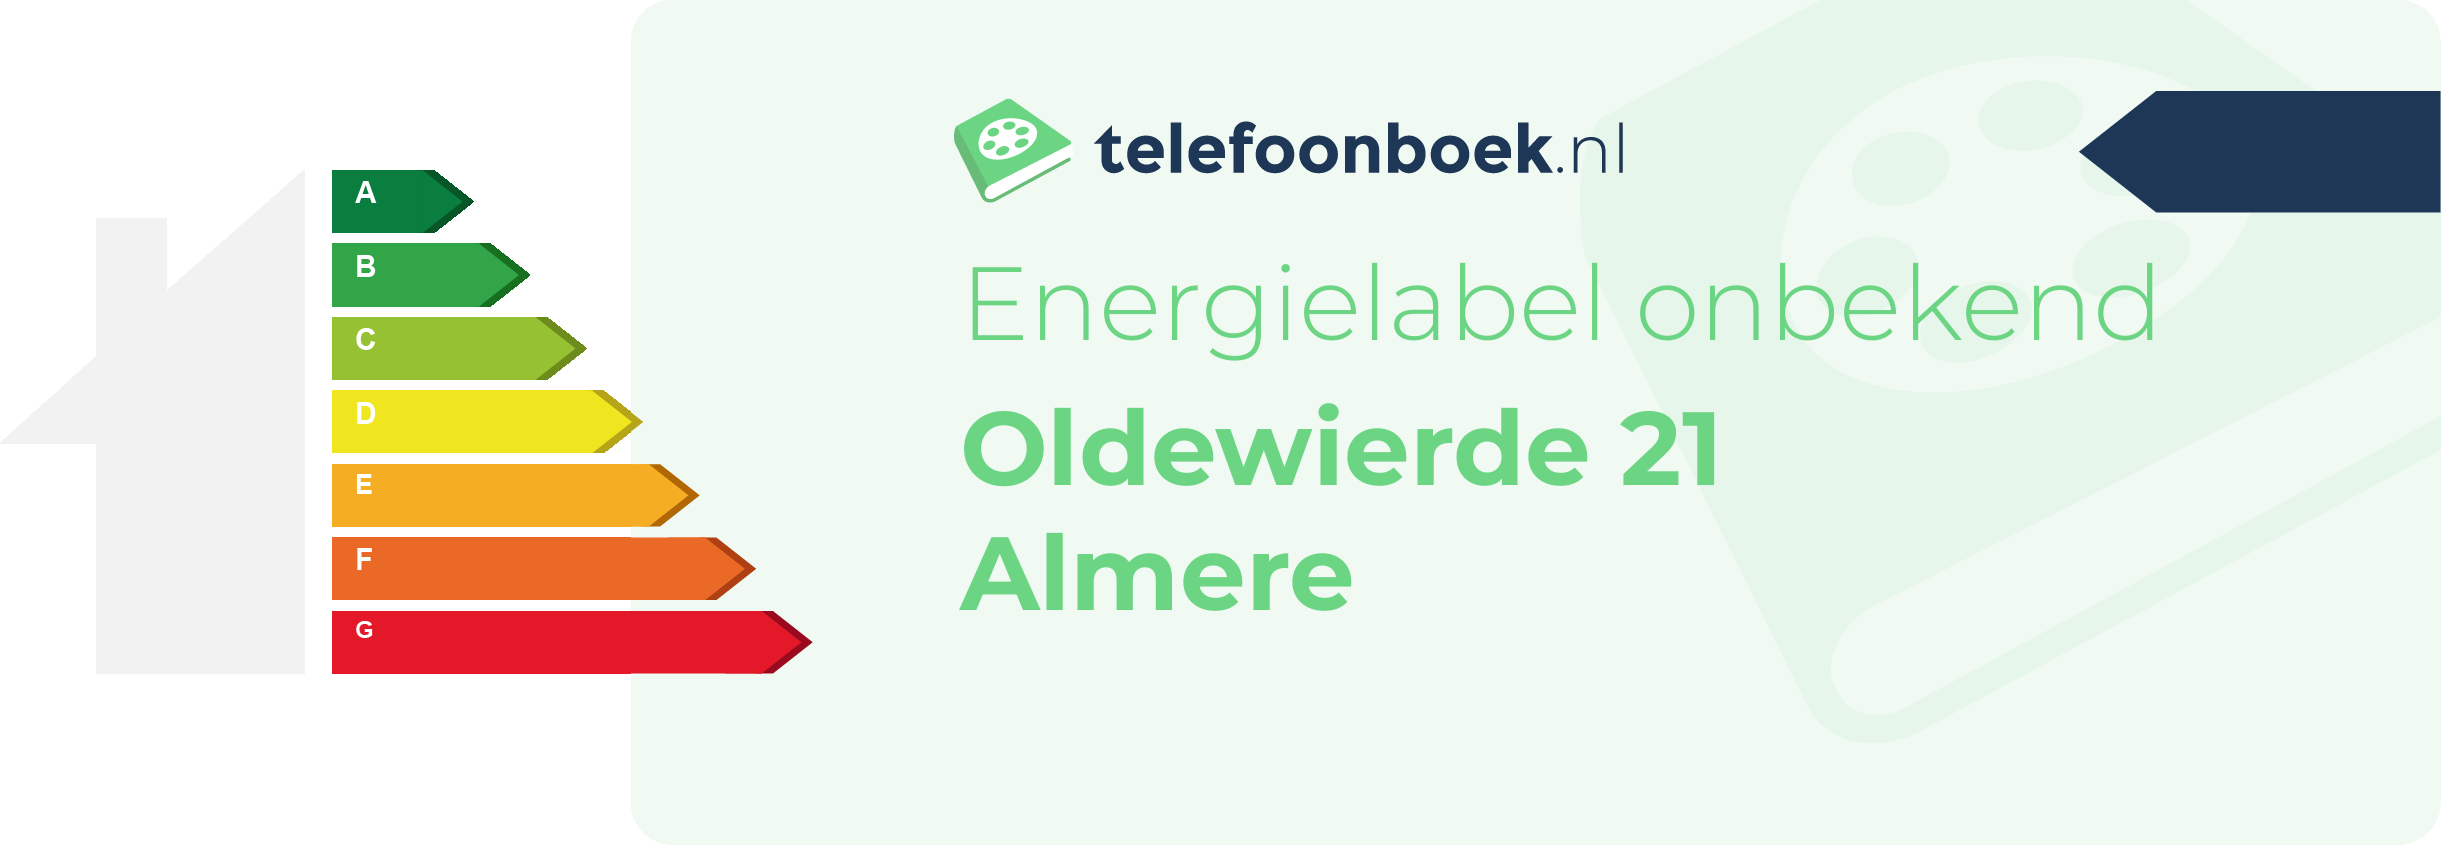 Energielabel Oldewierde 21 Almere